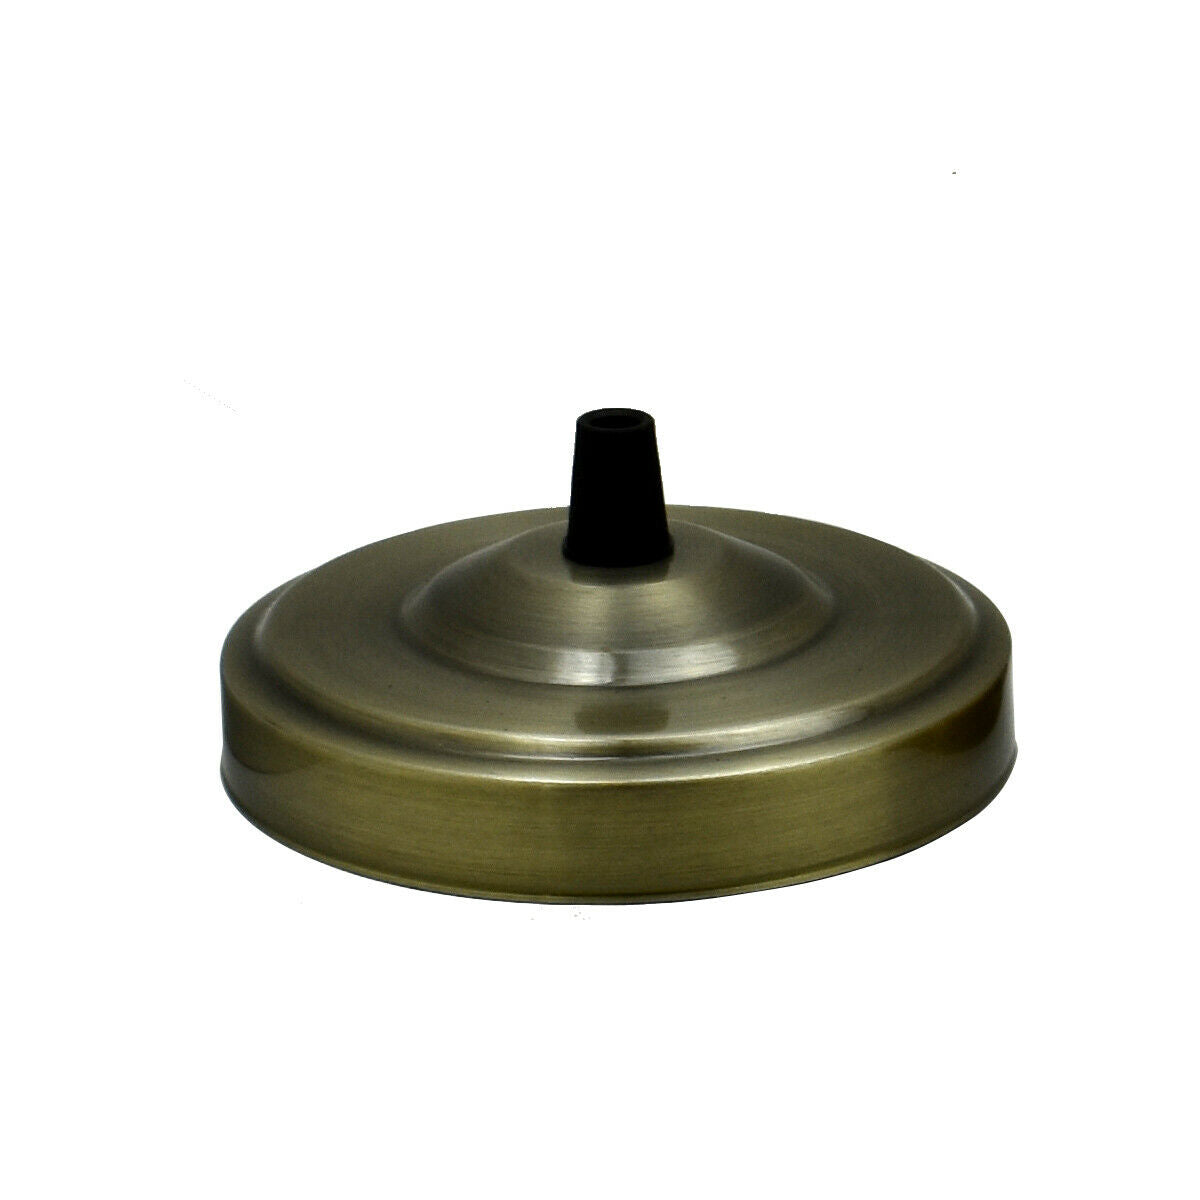 Green Brass Ceiling Rose 108mm Diameter Vintage Light Fitting~1467 - LEDSone UK Ltd